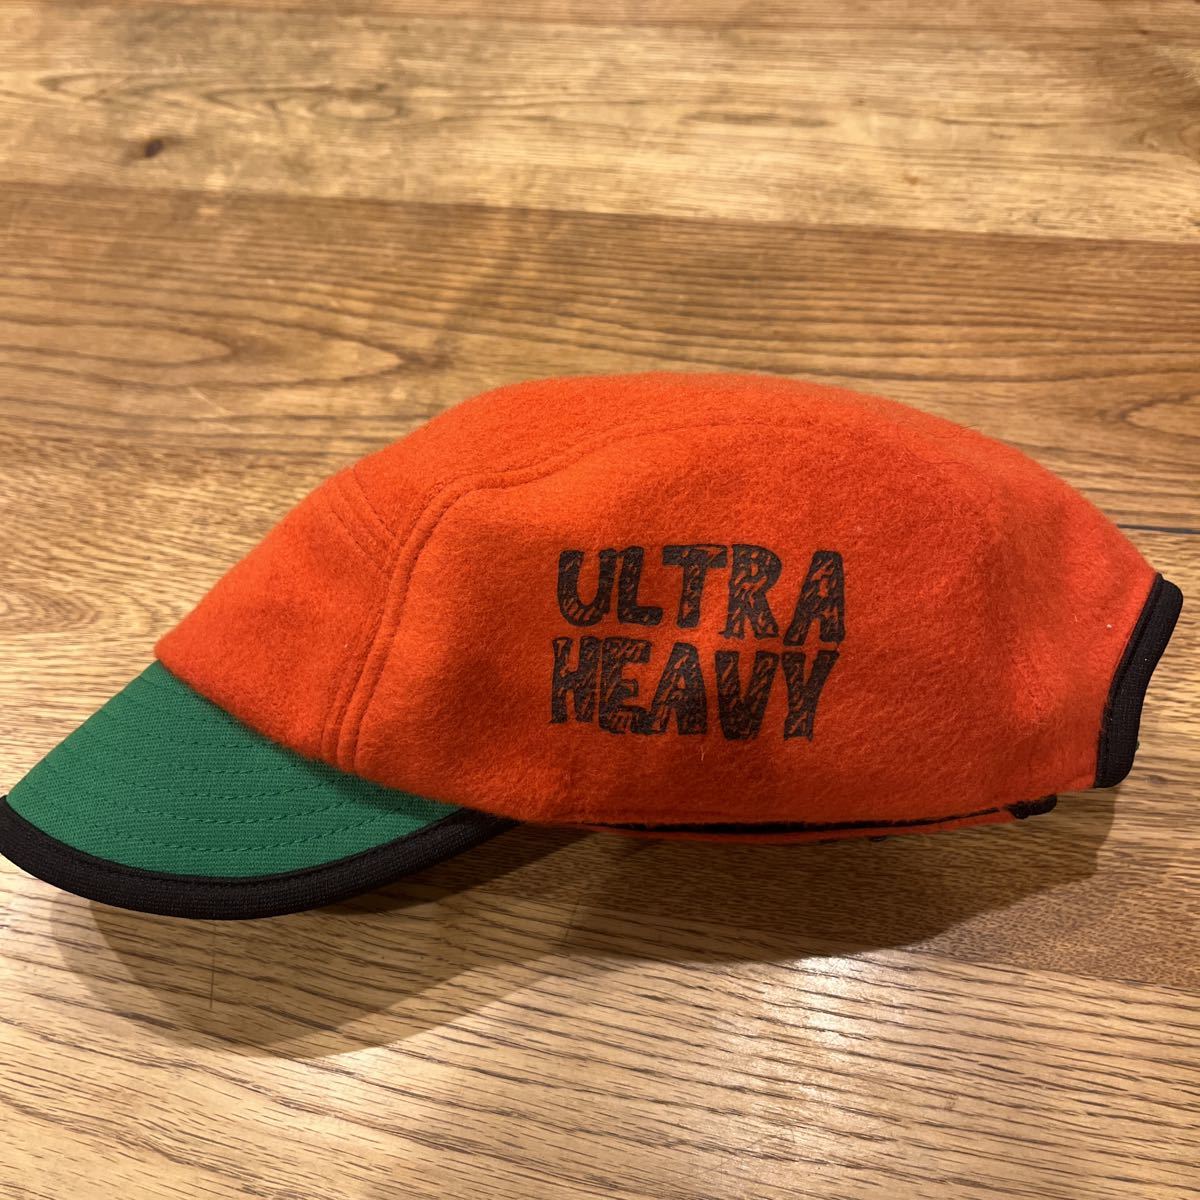 新品ULTRA HEAVY 旭川 どら猫 調製店 どら猫帽子店 ウール ベースボール キャップ ウルトラヘビー ビームス 帽子 フリース